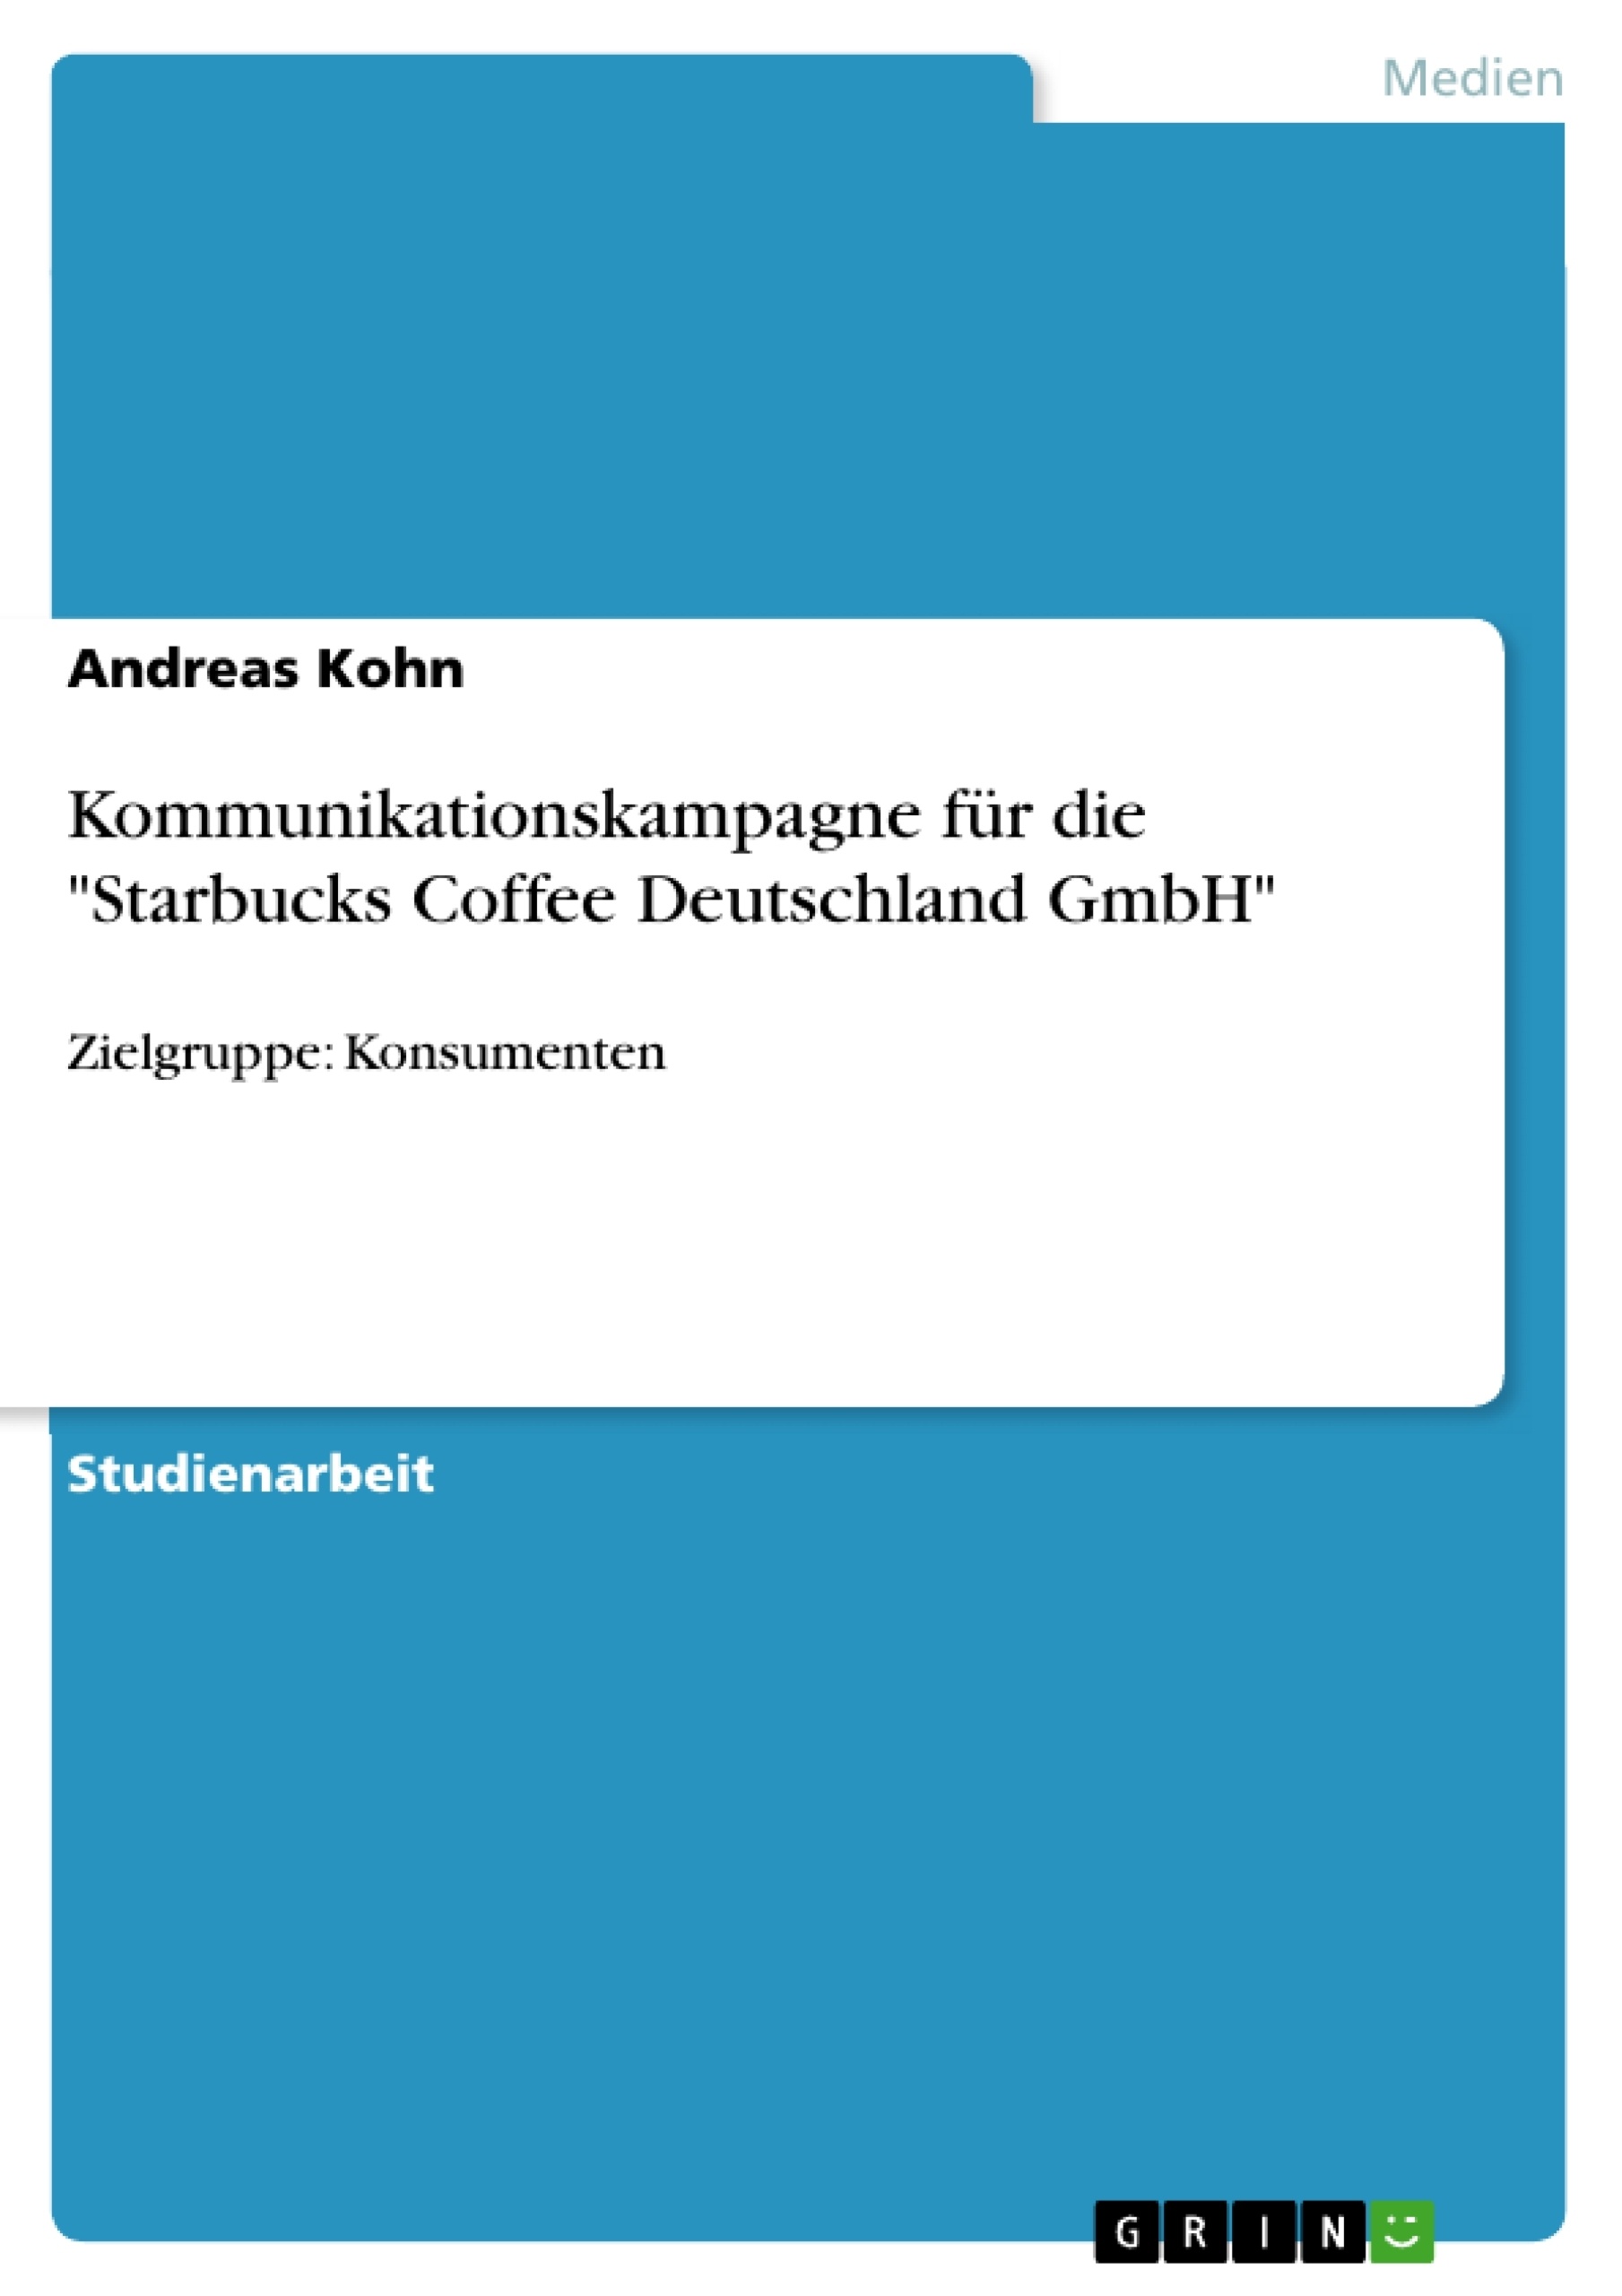 Titre: Kommunikationskampagne für die "Starbucks Coffee Deutschland GmbH"